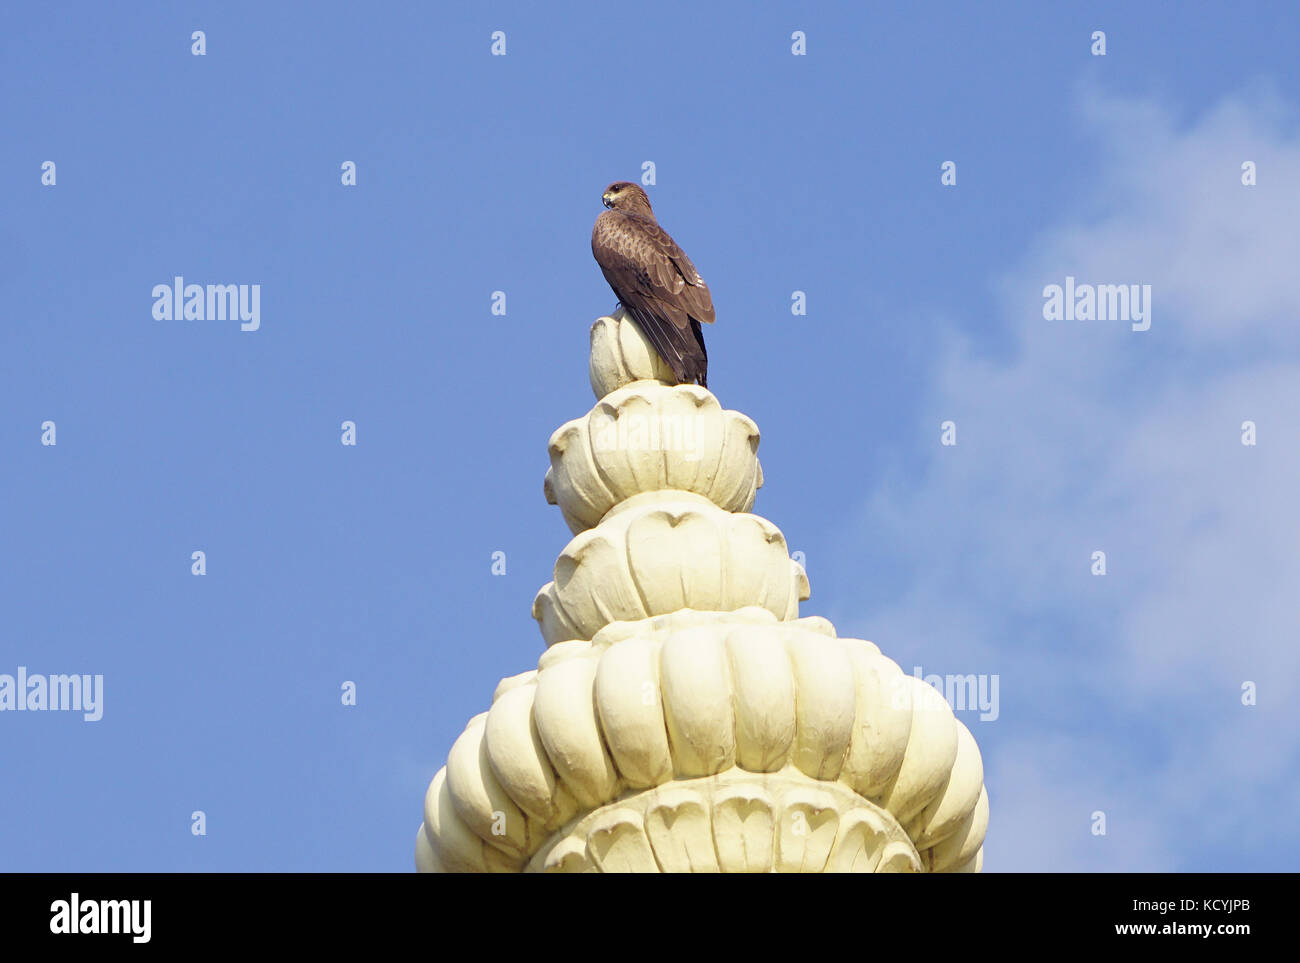 Un cerf-volant assis sur le haut du dôme d'un temple Banque D'Images